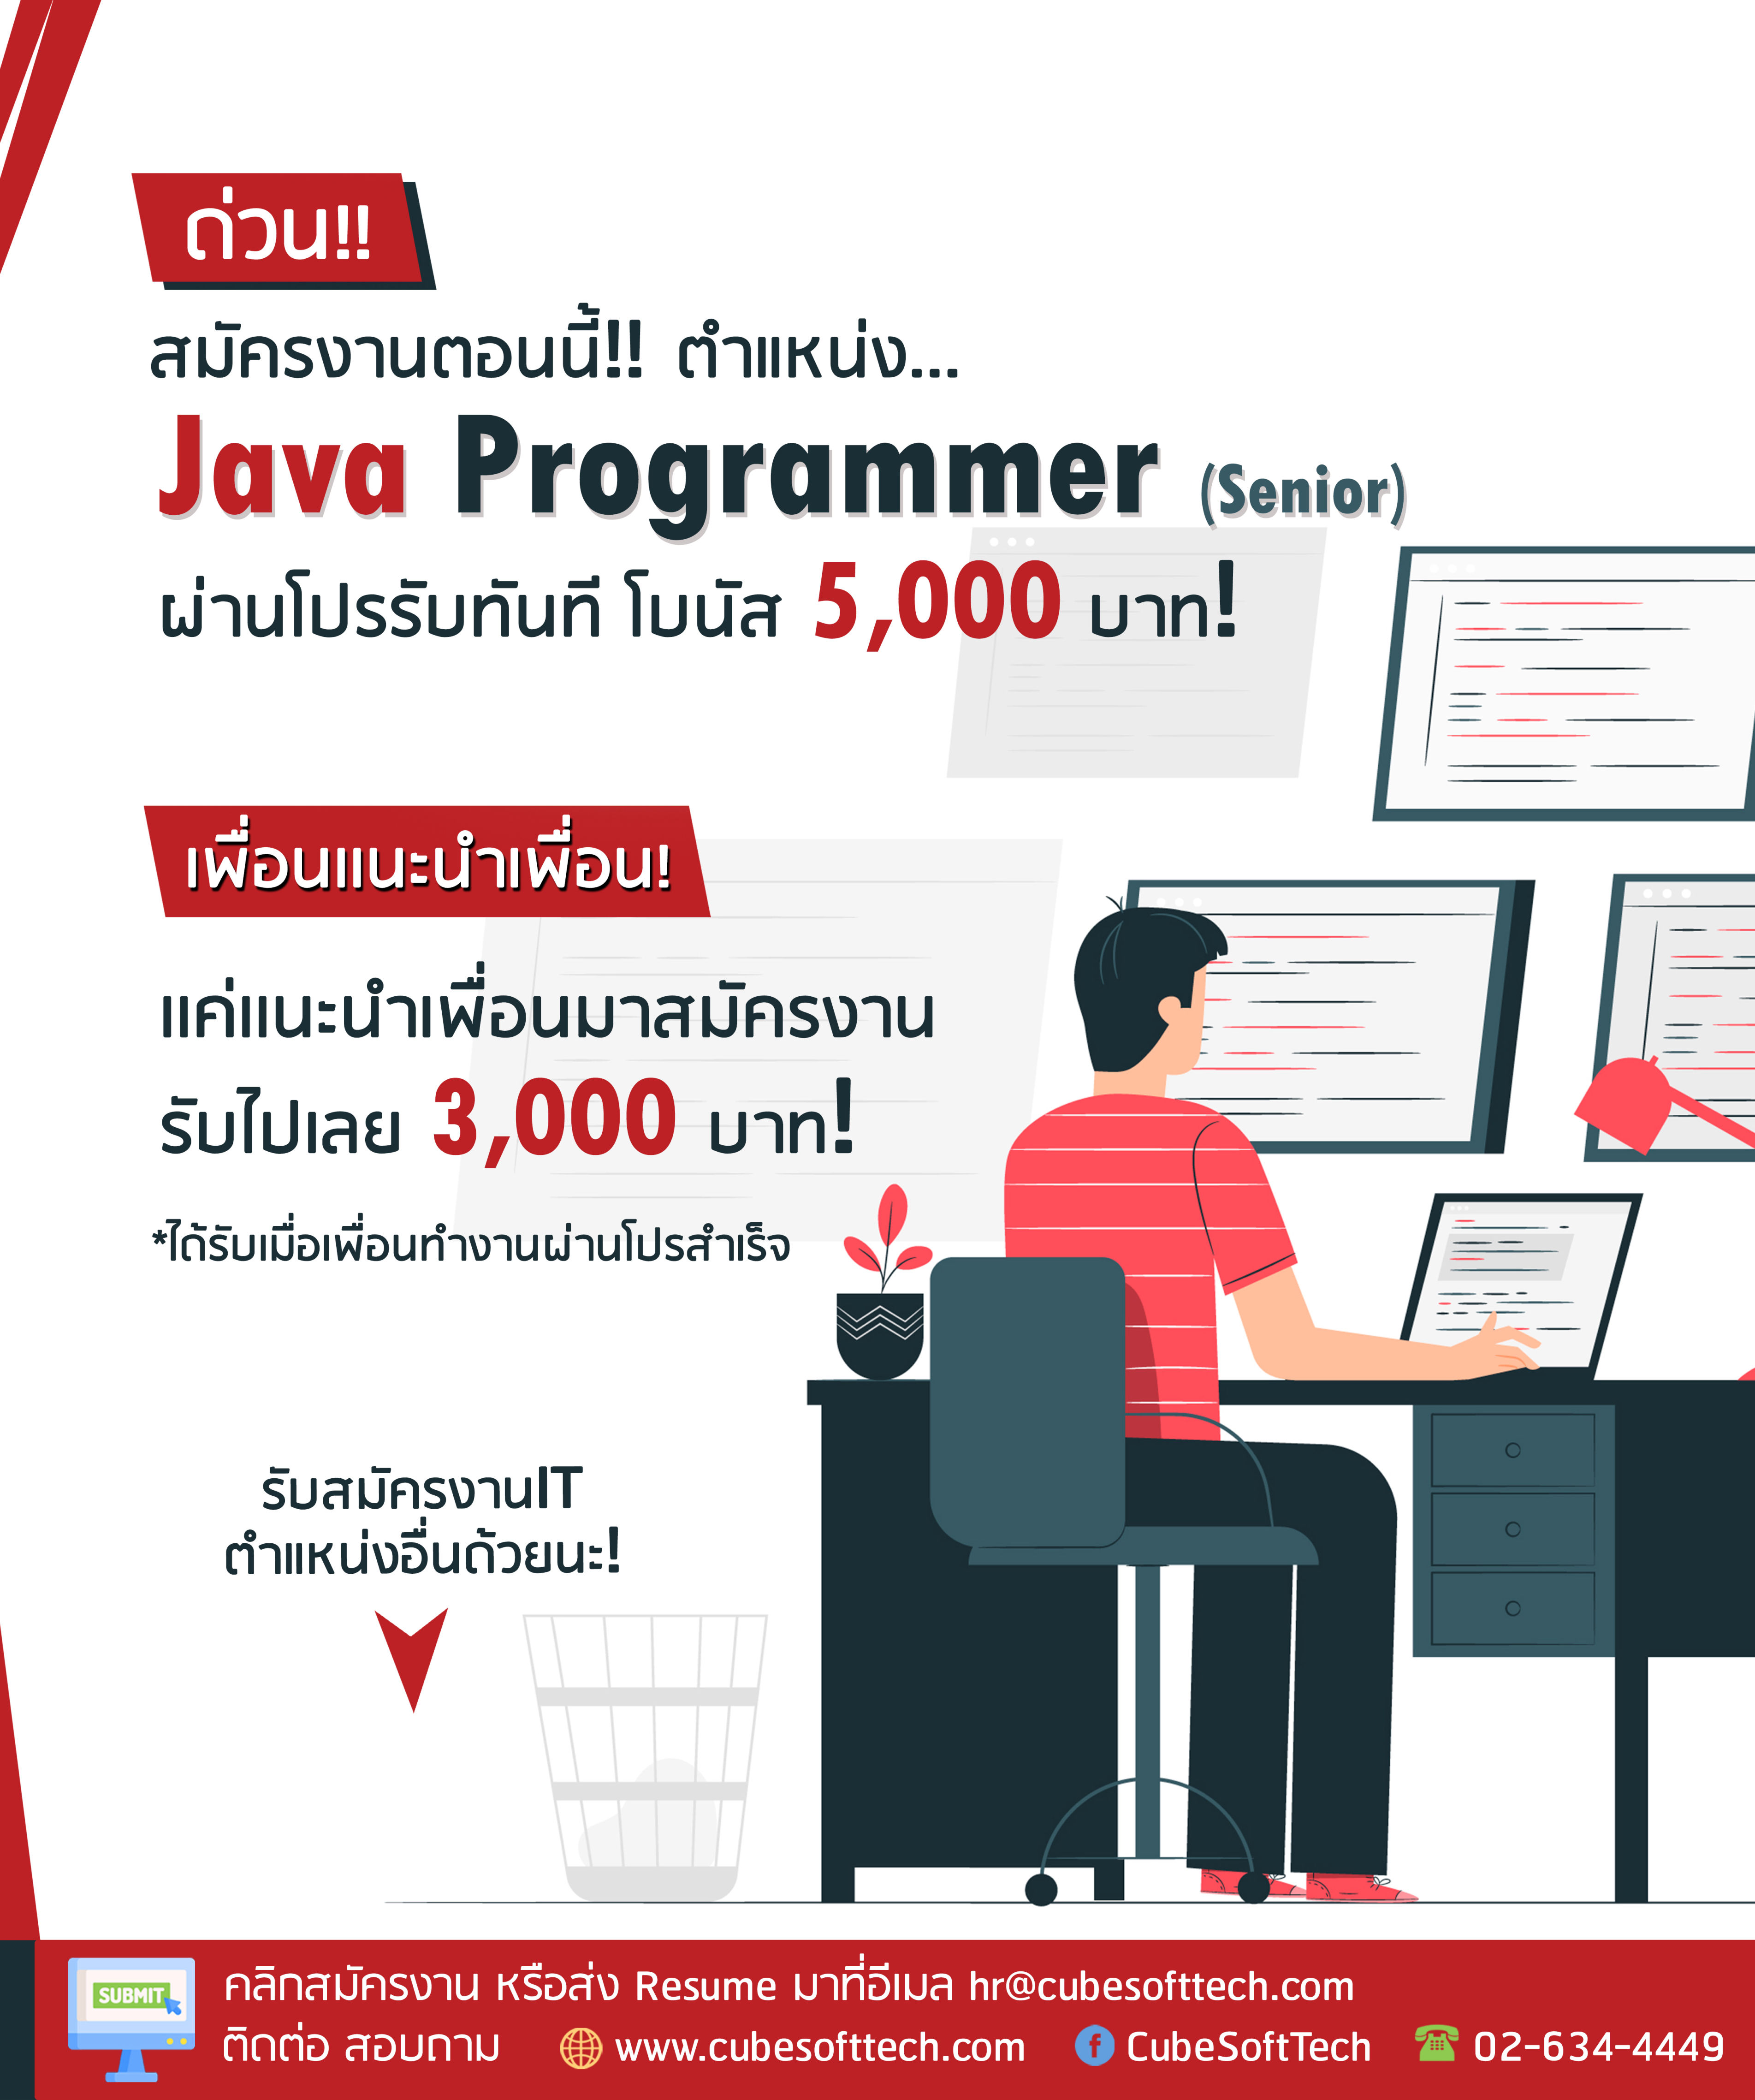 รับสมัครพนักงาน Java Programmer (Senior Java) ด่วน สมัครวันนี้ ได้รับโบนัสฟรีเมื่อผ่านการทดลองงานเป็น Java Programmer